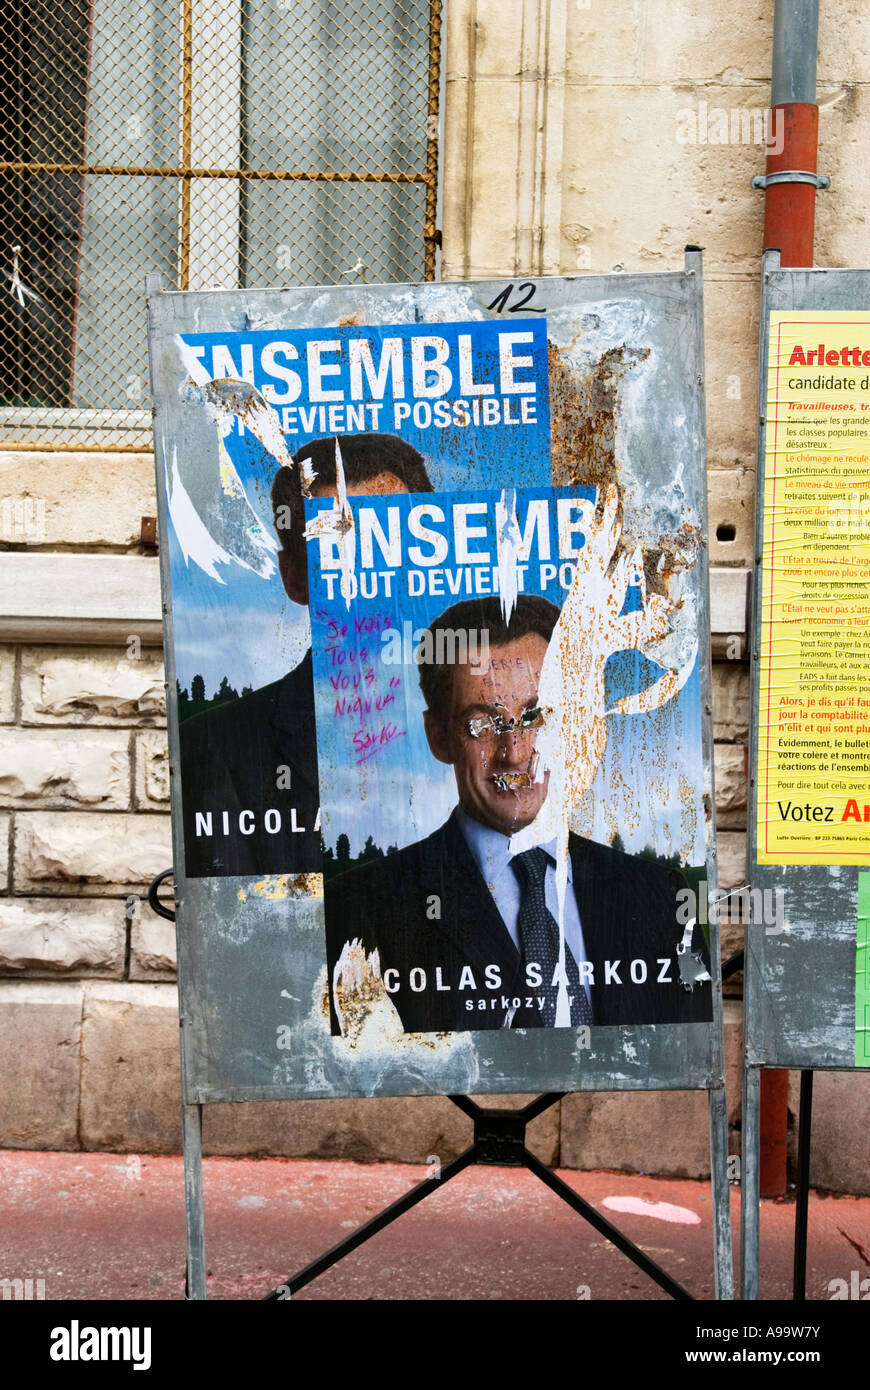 438 ein Wahlplakat der französischen Präsidentschaftskandidaten Nicolas Sarkozy während seiner Kampagne zu Office 2007 Stockfoto